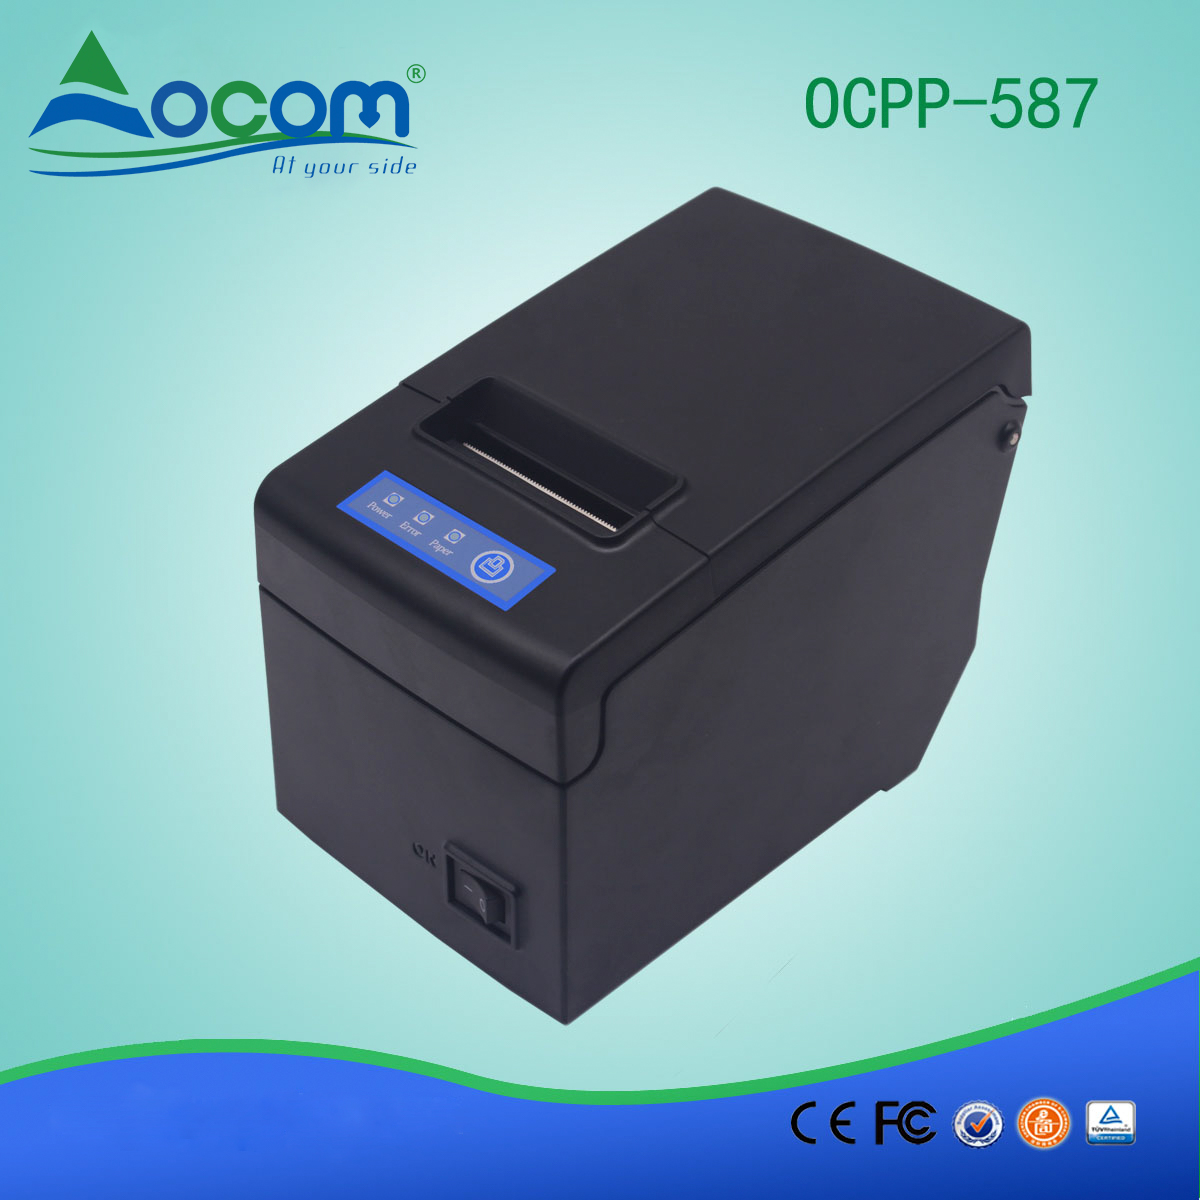 Impresora térmica de recibos OCPP-587-U de 58 mm con soporte USB para papel grande